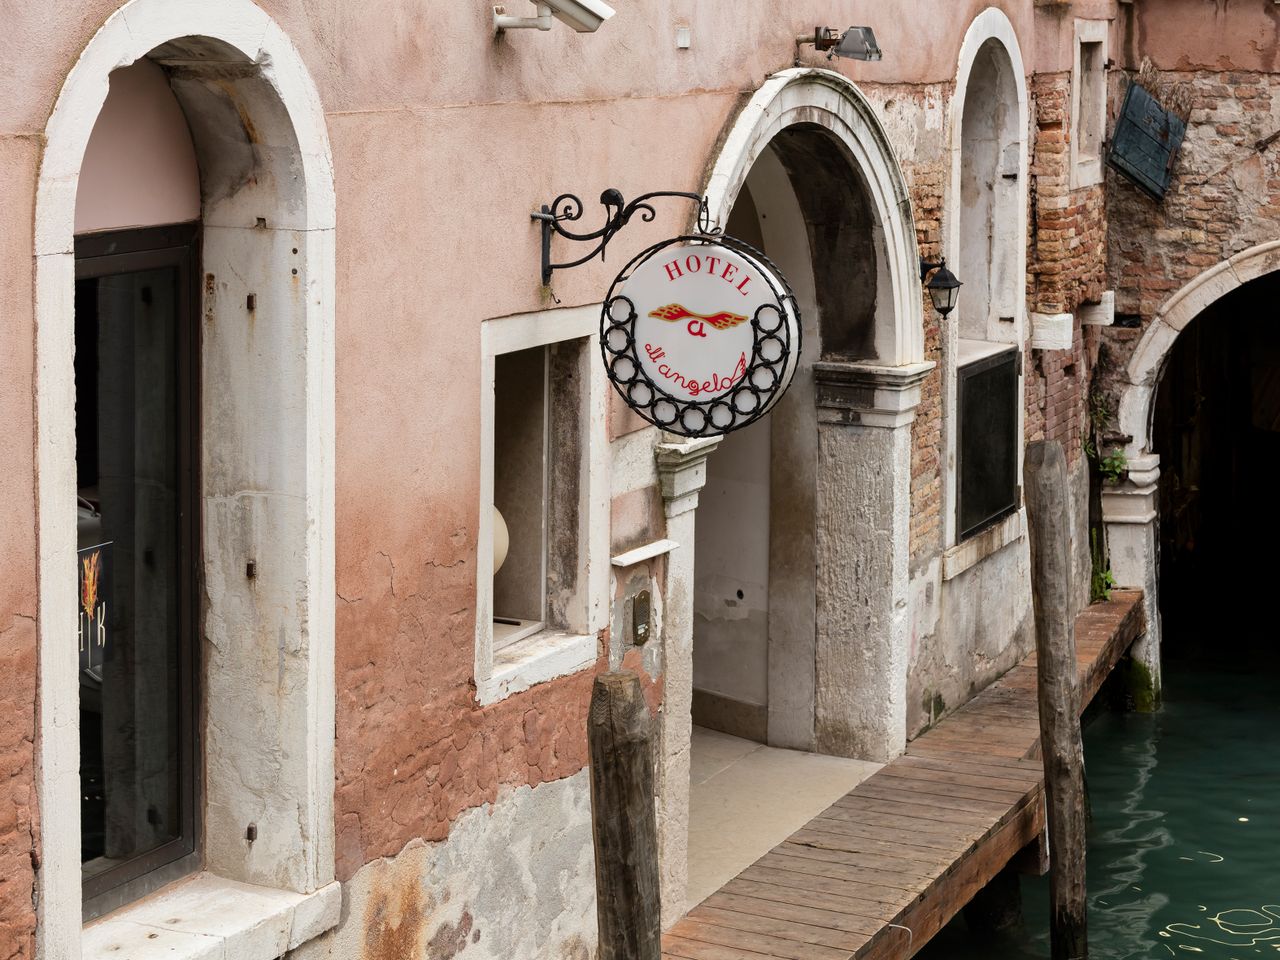 6 Tage in der Lagunenstadt Venedig